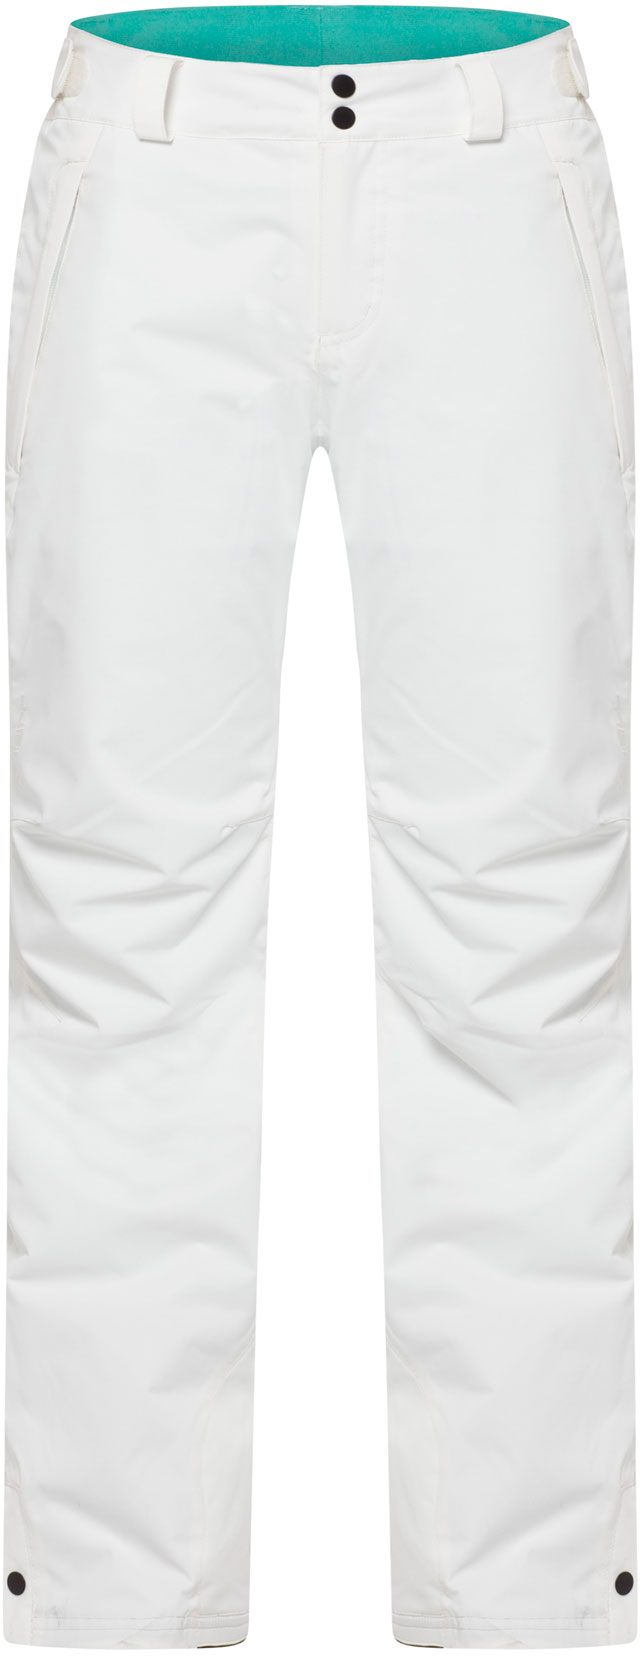 PW STAR PANTS - Dámské lyžařské/snowboardové kalhoty